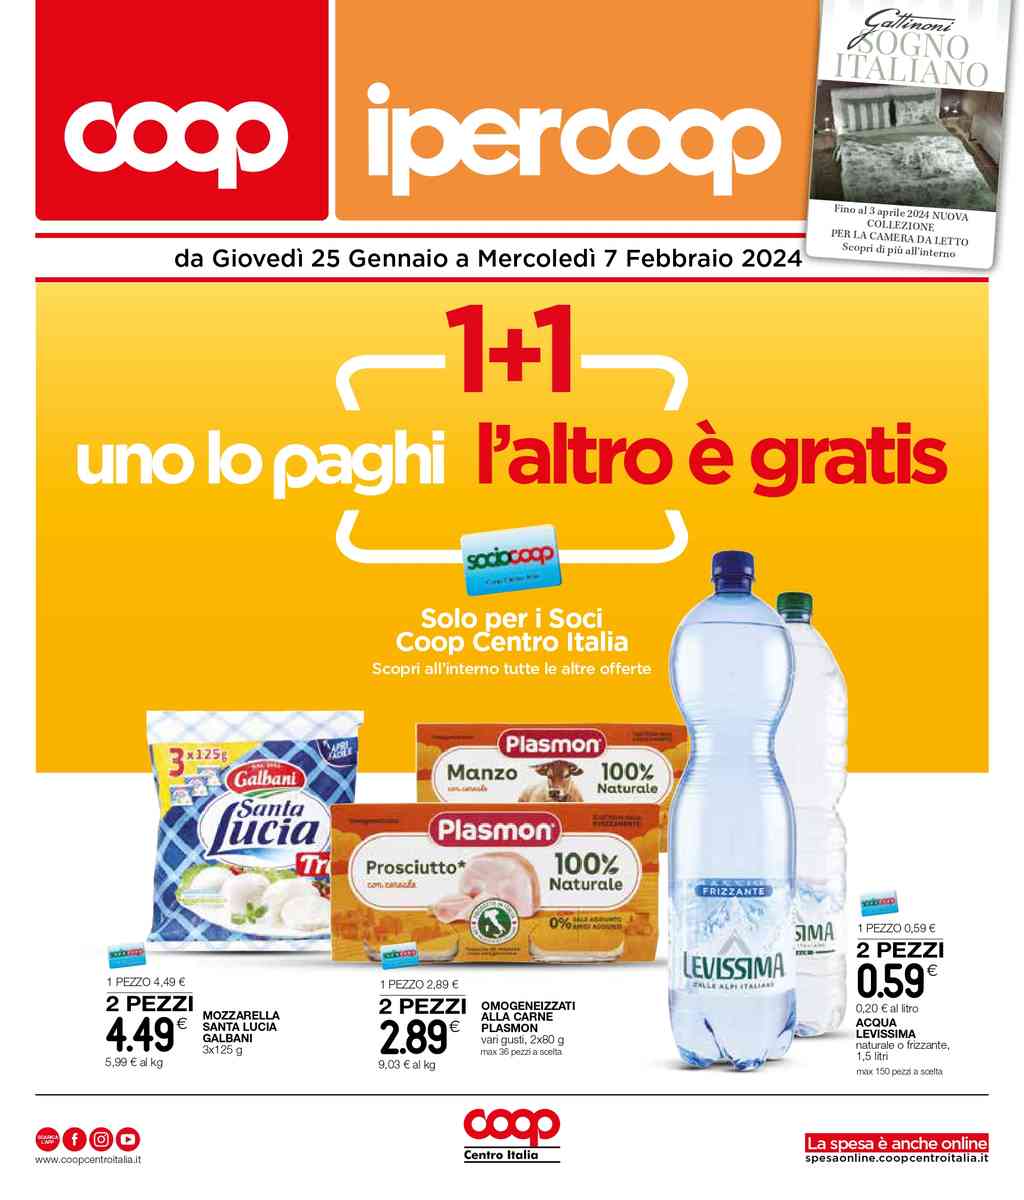 Volantino Coop Ipercoop Centro Italia dal 25 gennaio al 7 febbraio 2024